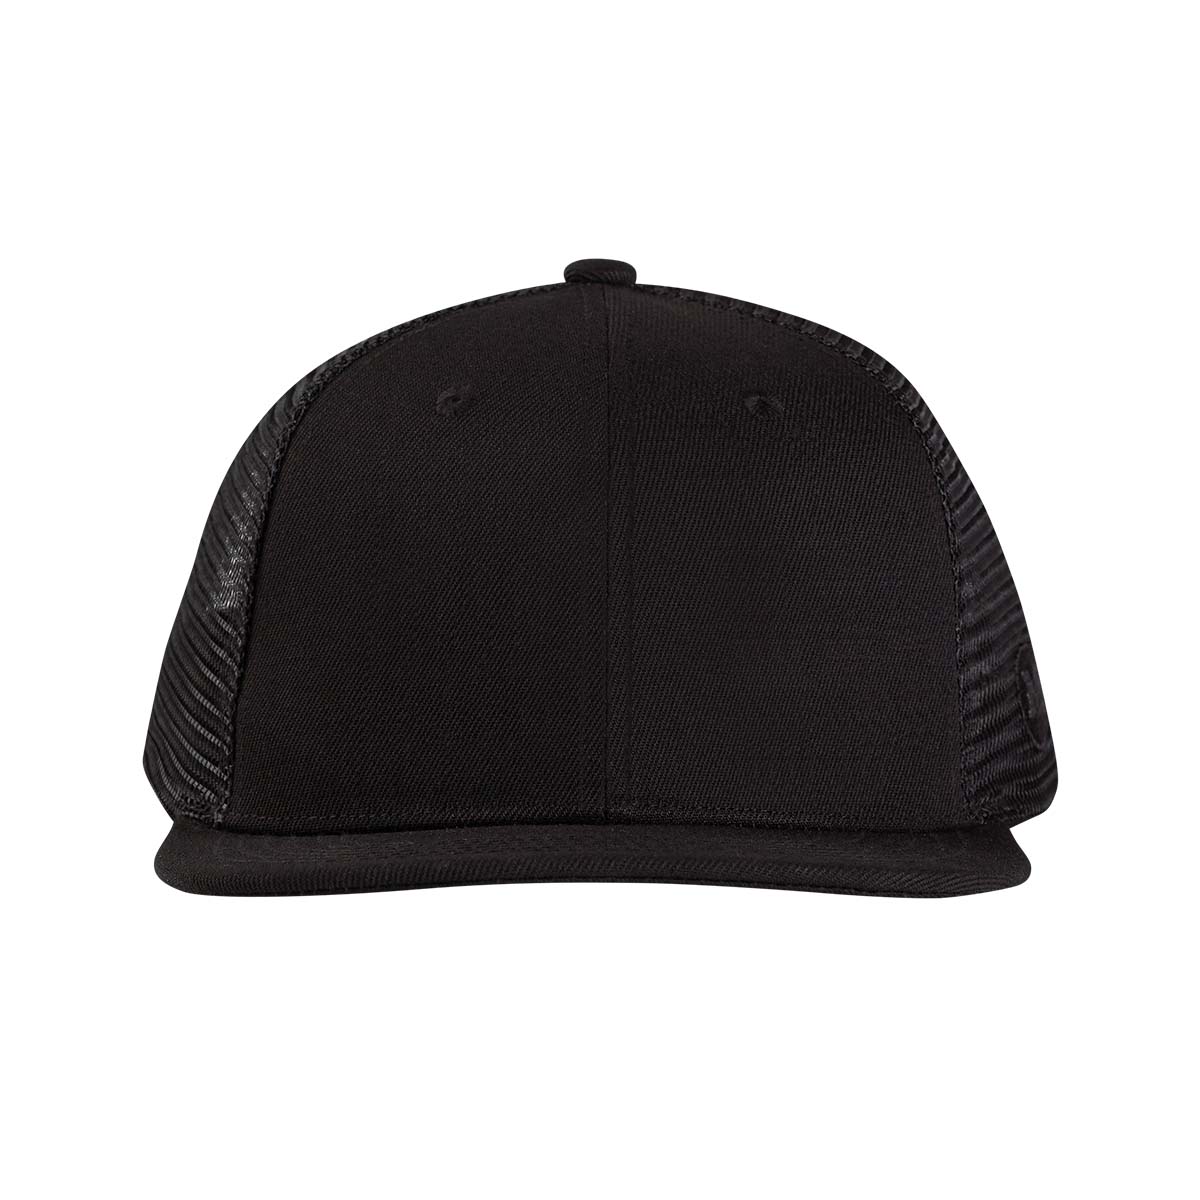 XXL Hats - Black Blank Trucker - Fit & Style Combined